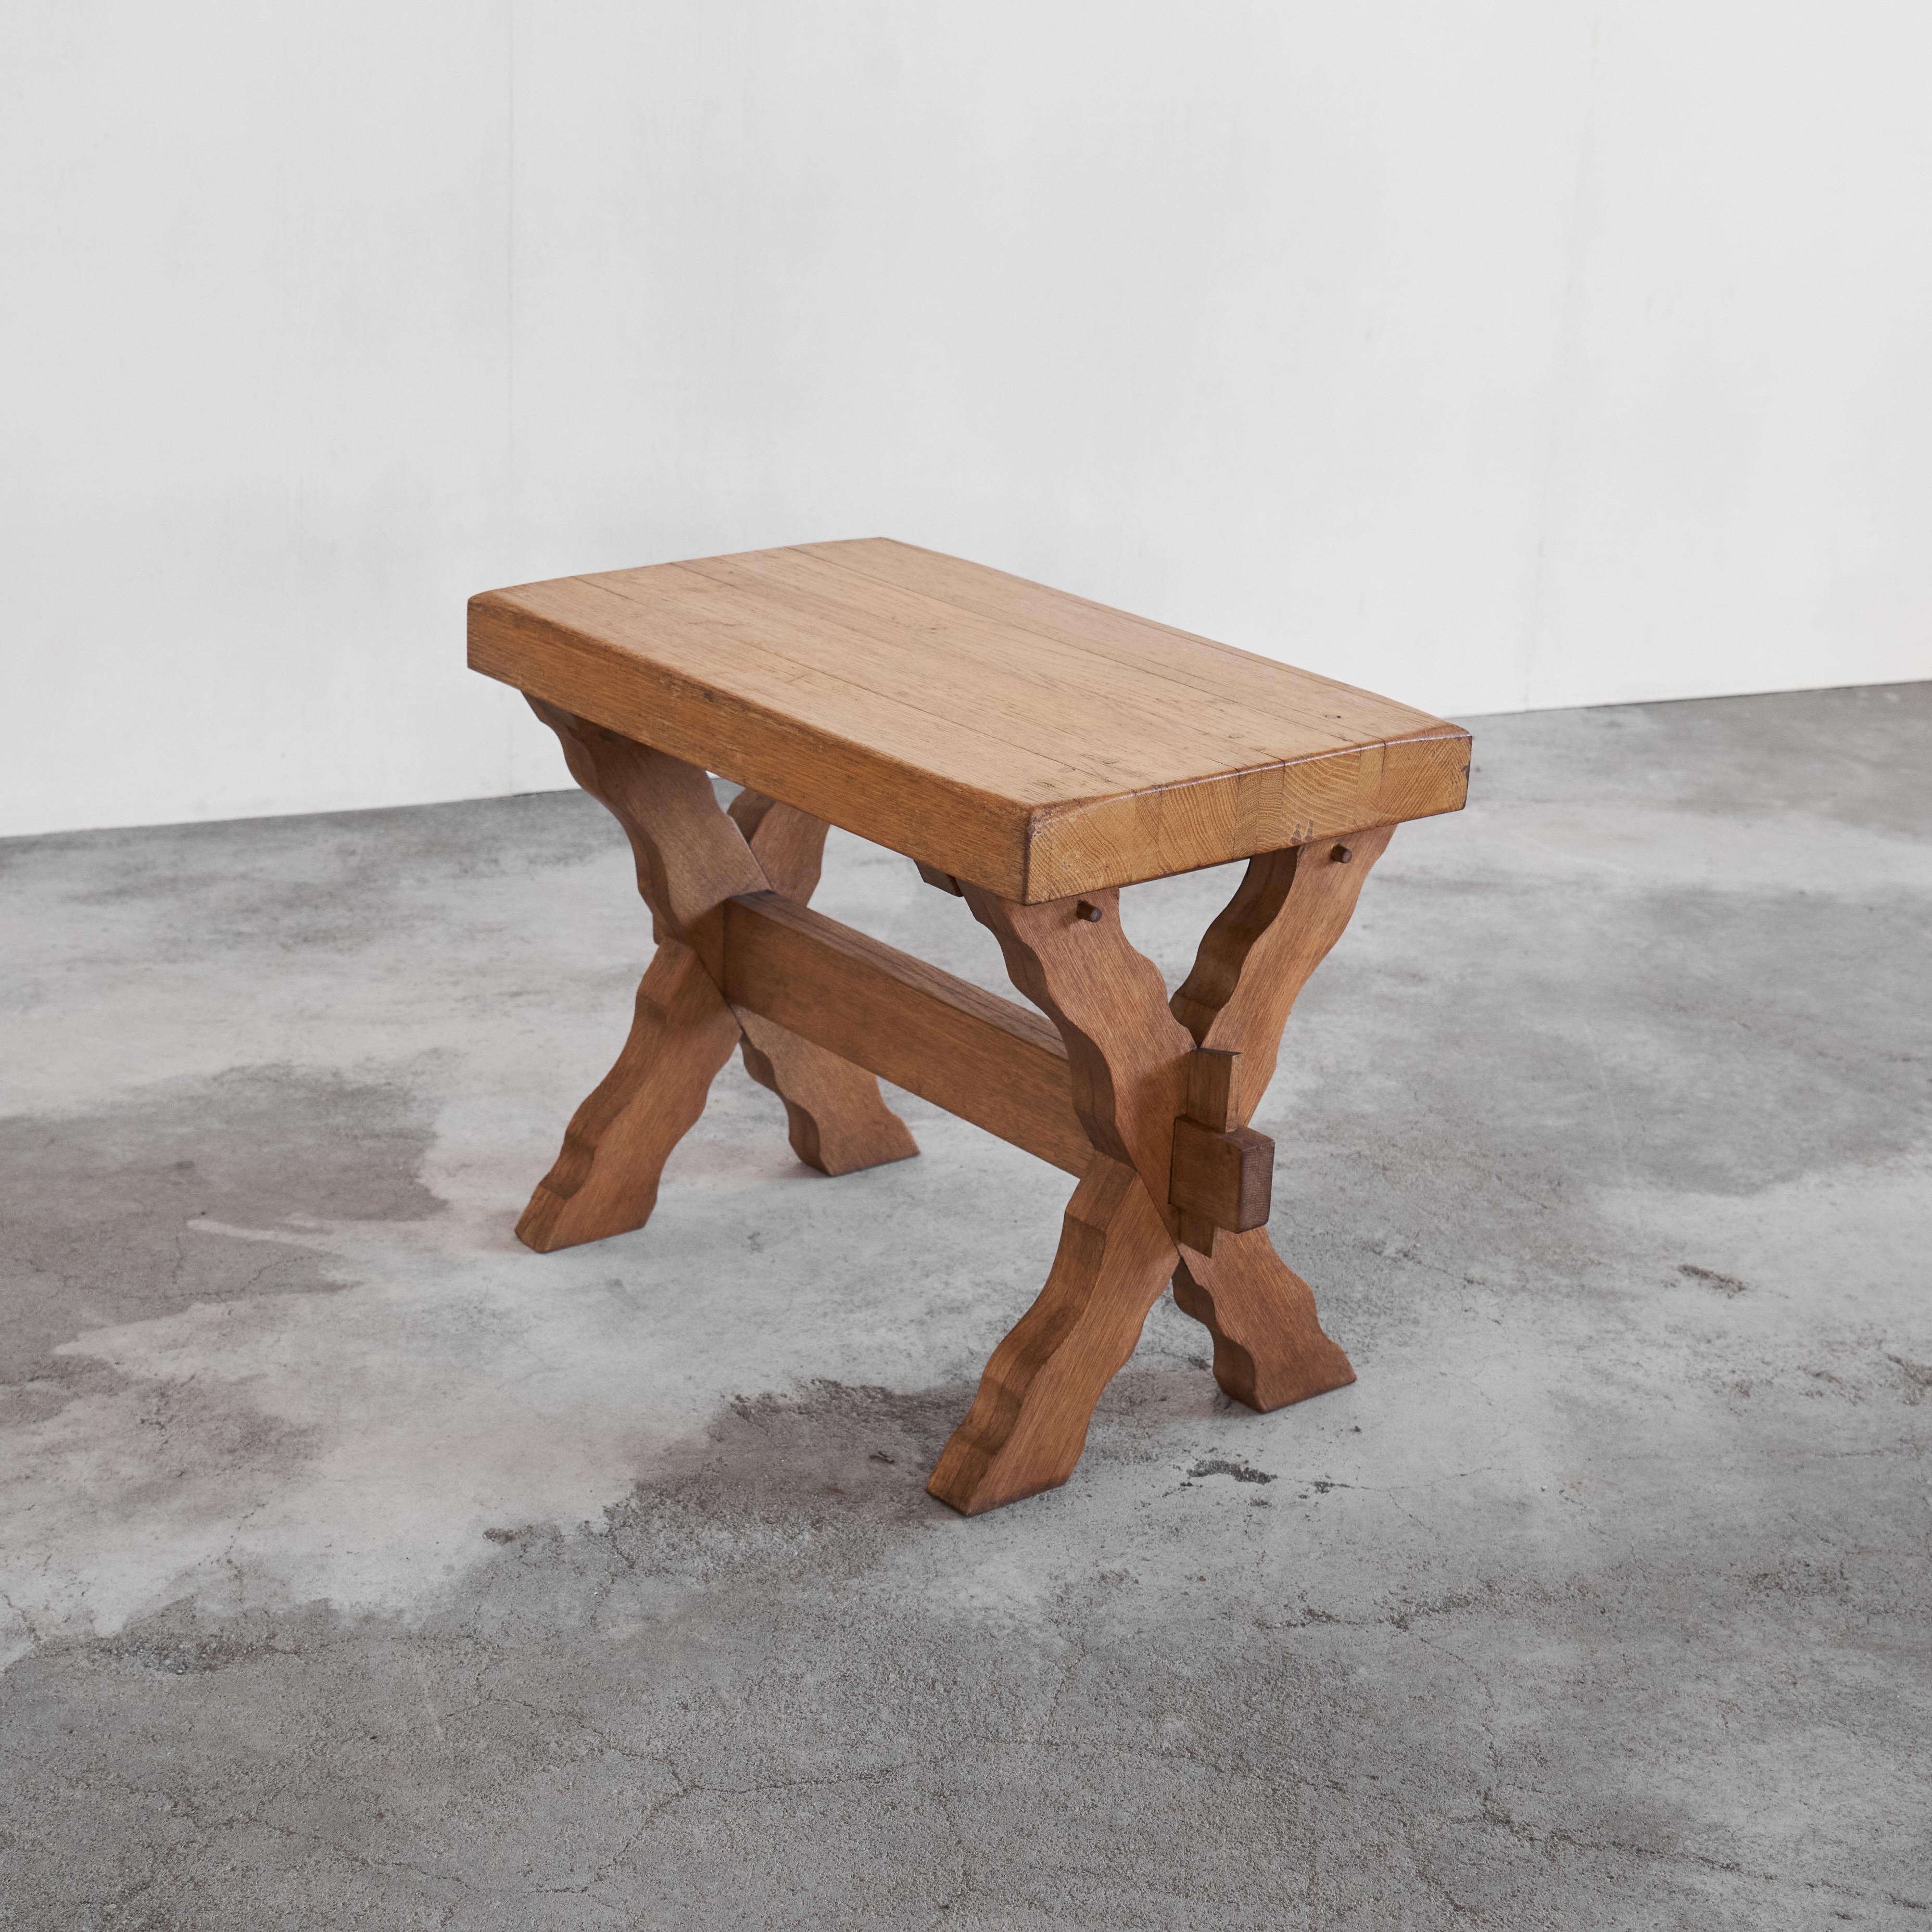 Skulpturaler Beistelltisch mit gekreuzten Beinen aus Massivholz 1940er Jahre.

Großartiger skulpturaler Tisch mit gekreuzten Beinen / Beistelltisch aus dickem Massivholz, hergestellt in der Mitte des 20. Dieser raue und rustikale Tisch ist ein sehr